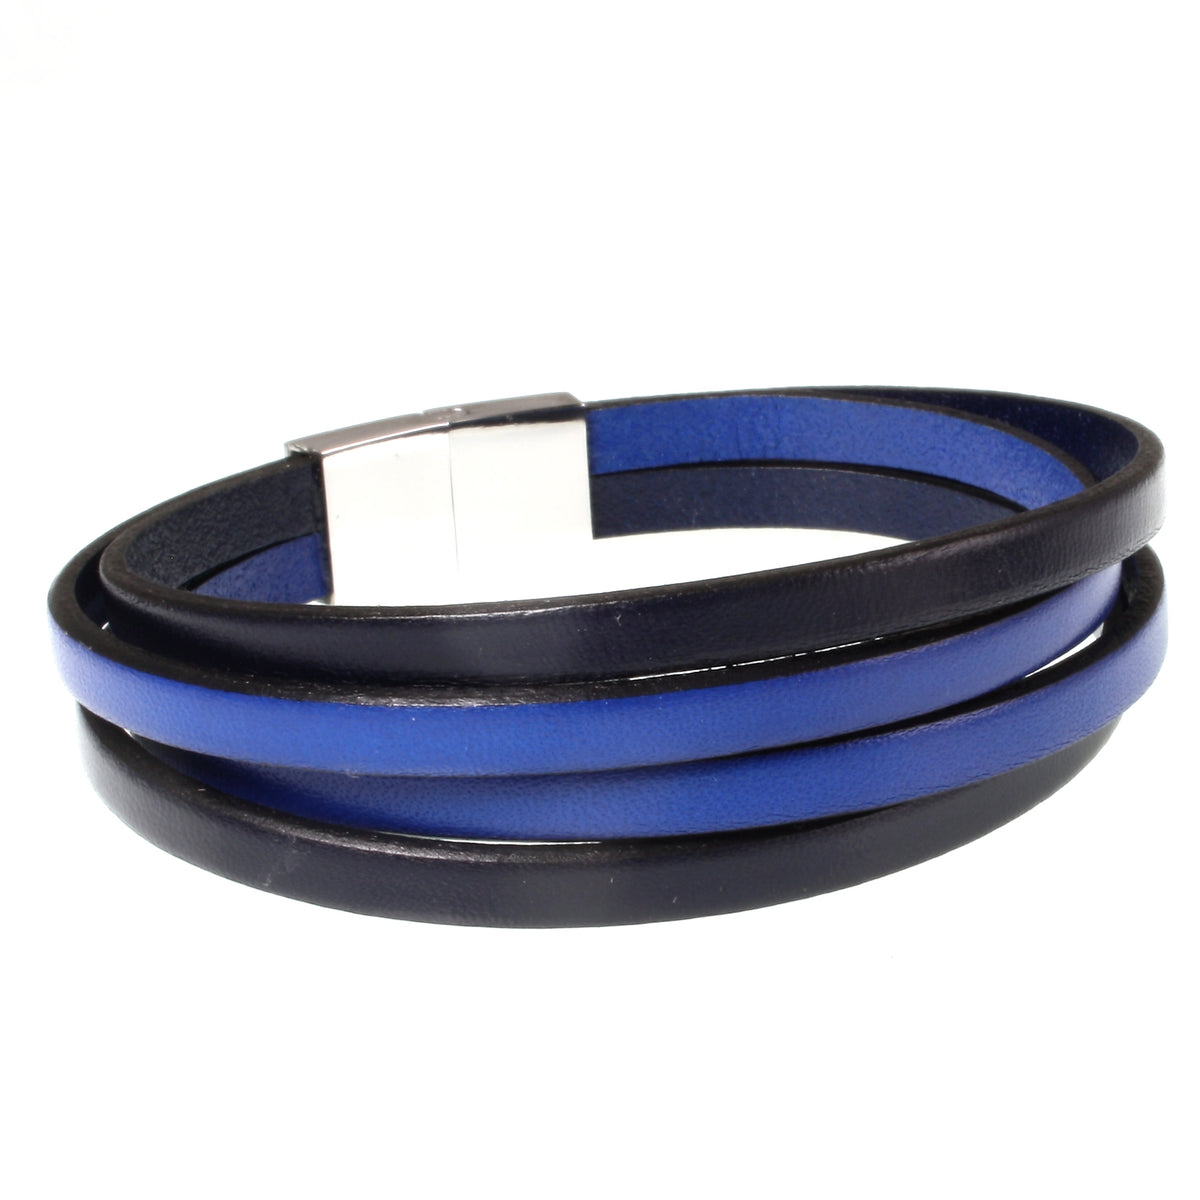 Herren-Leder-Armband-Twist-navy-blau-flach-Edelstahlverschluss-hinten-wavepirate-shop